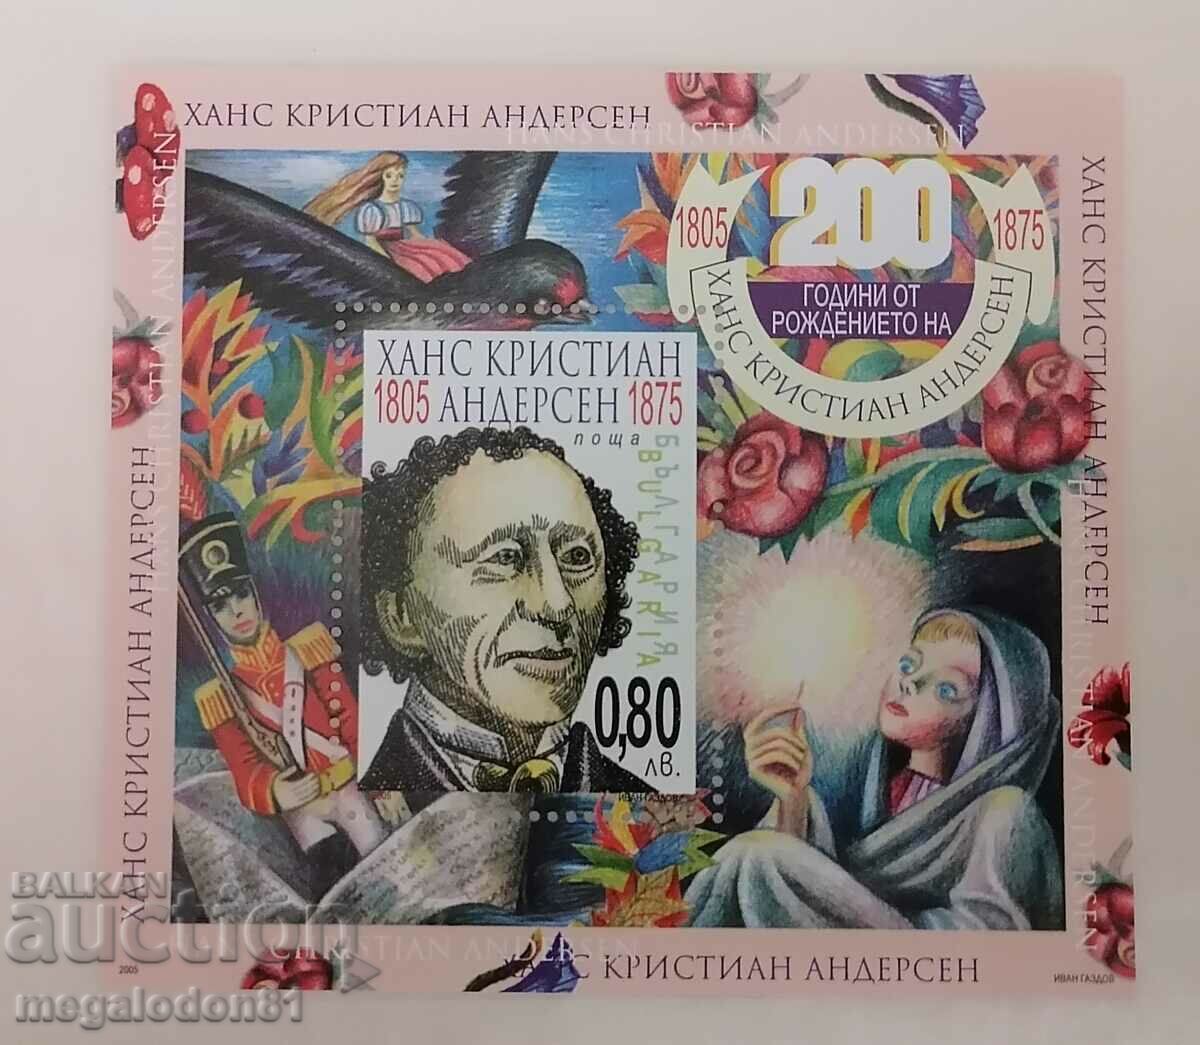 Bulgaria - 200 de ani de la nașterea lui H.K. Andersen